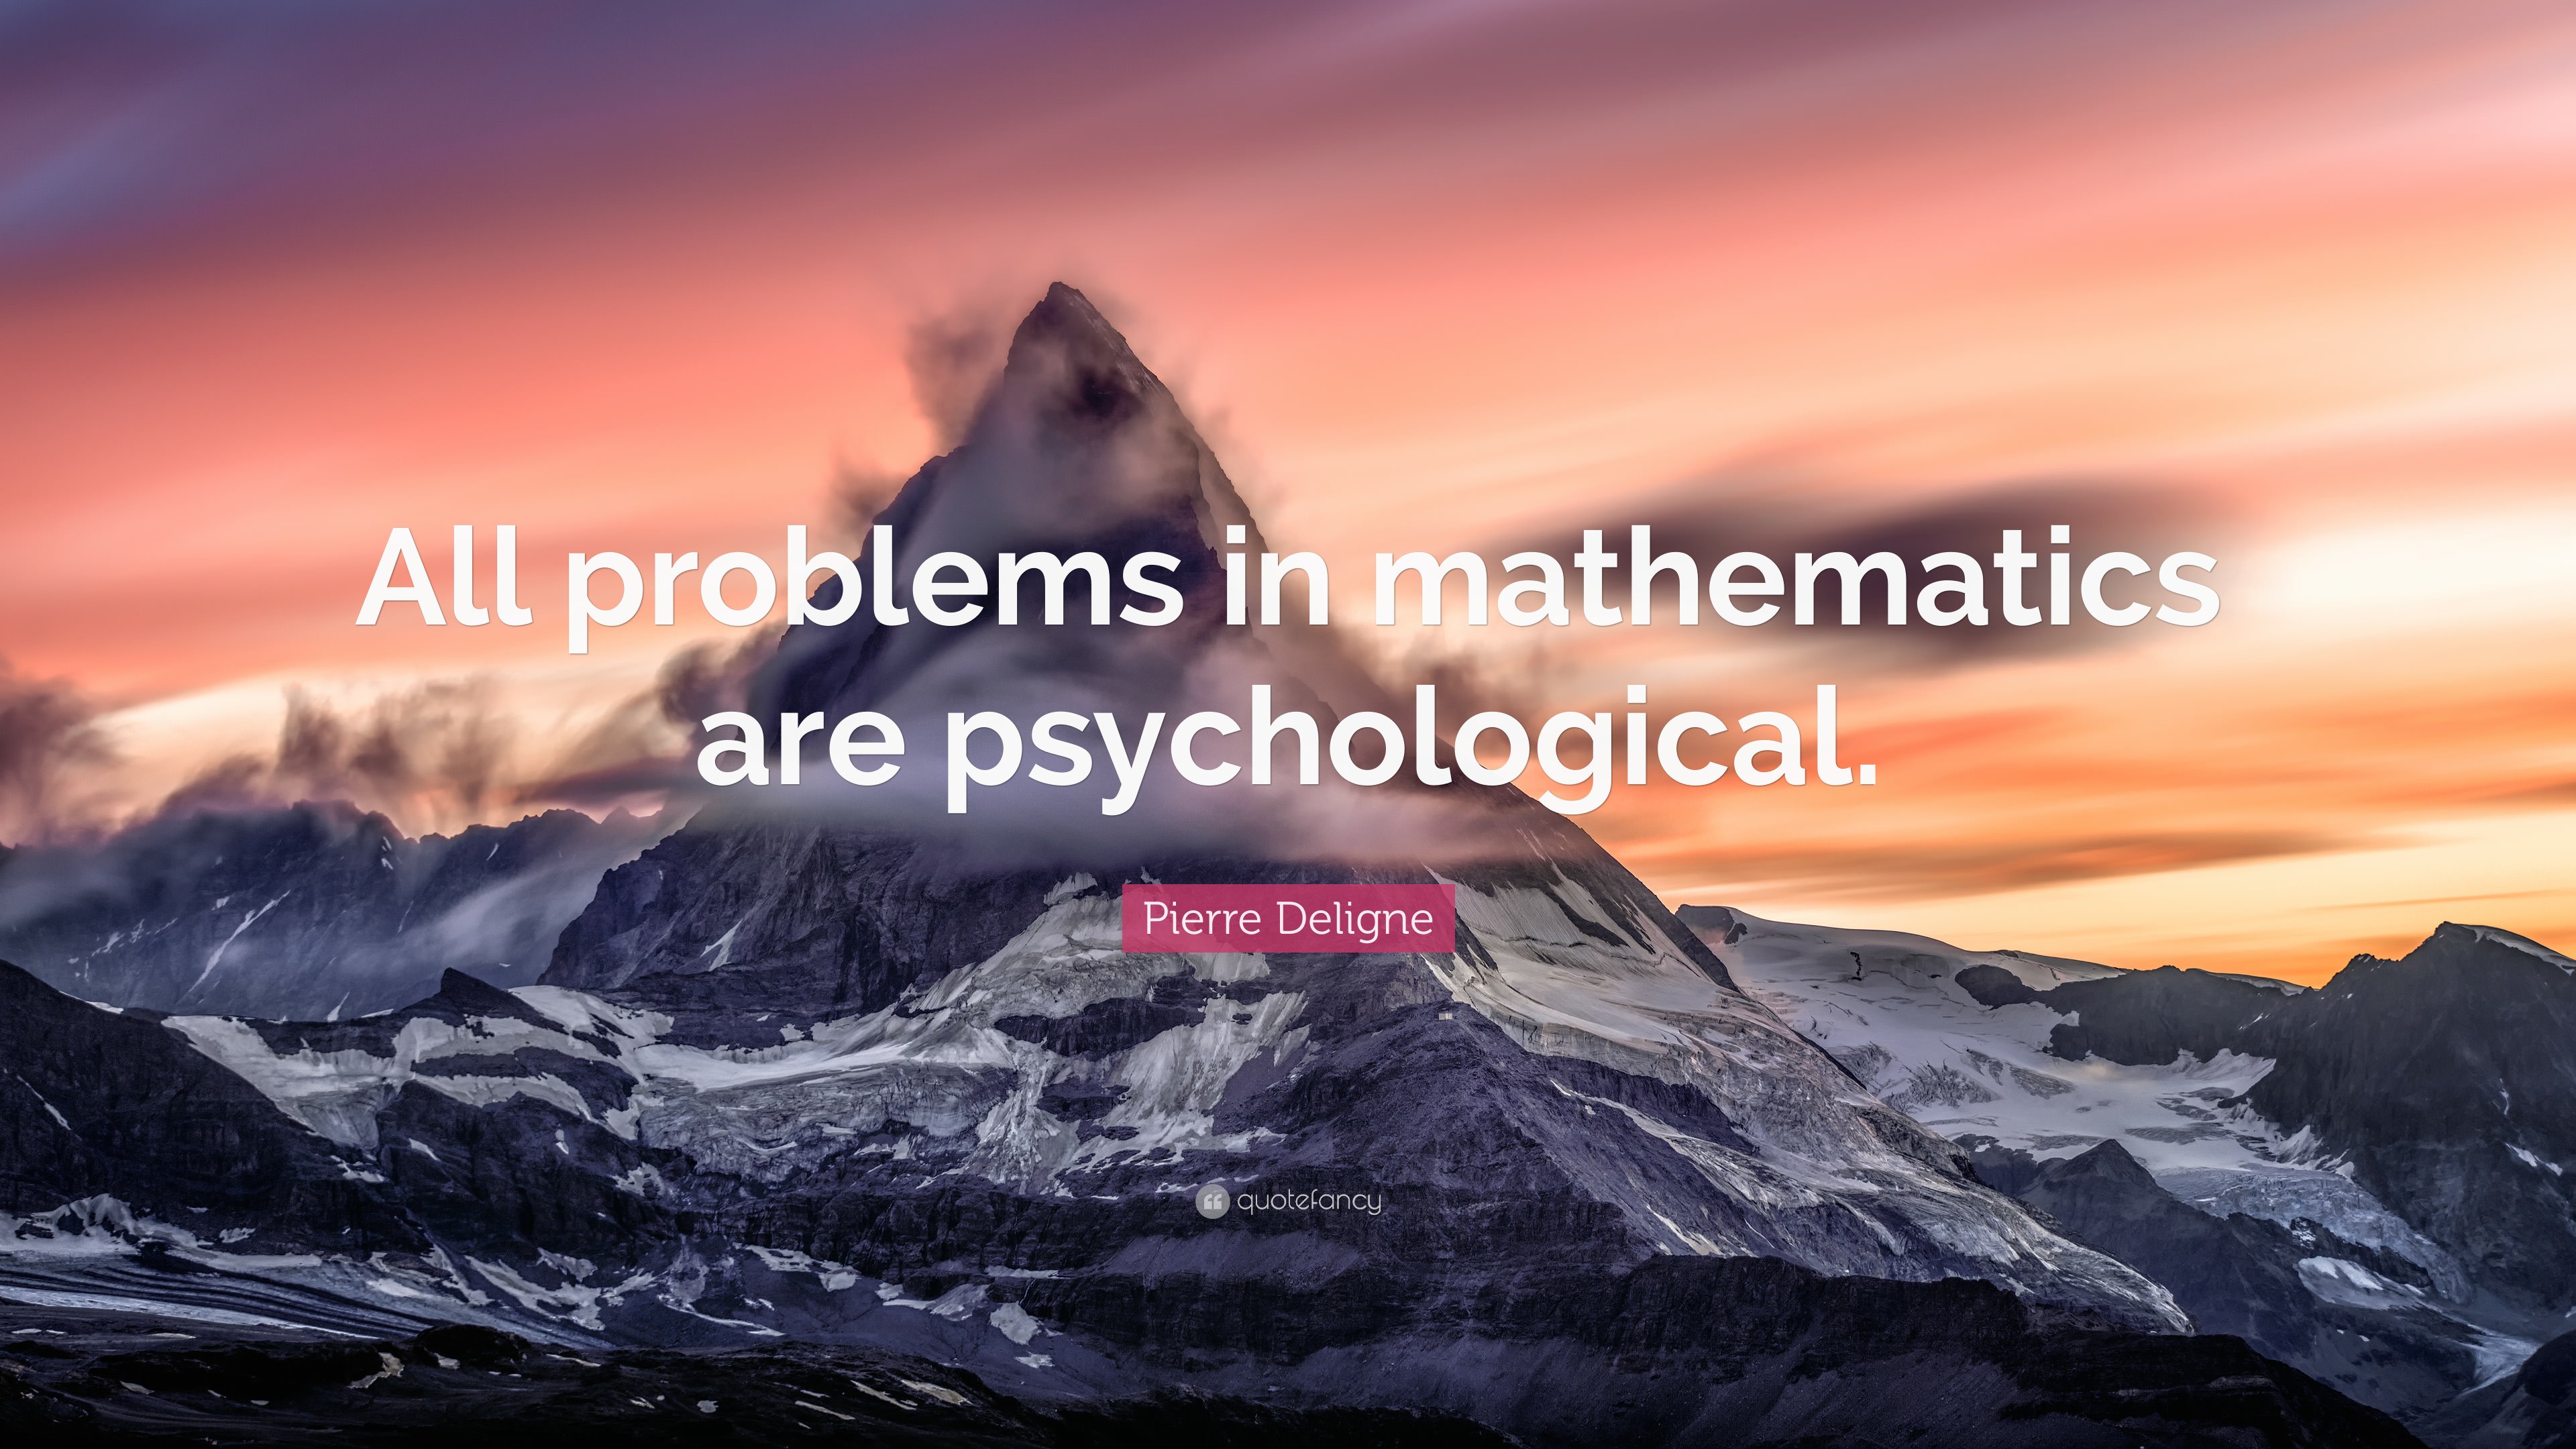 Pierre Deligne Quote: “All problems in mathematics are